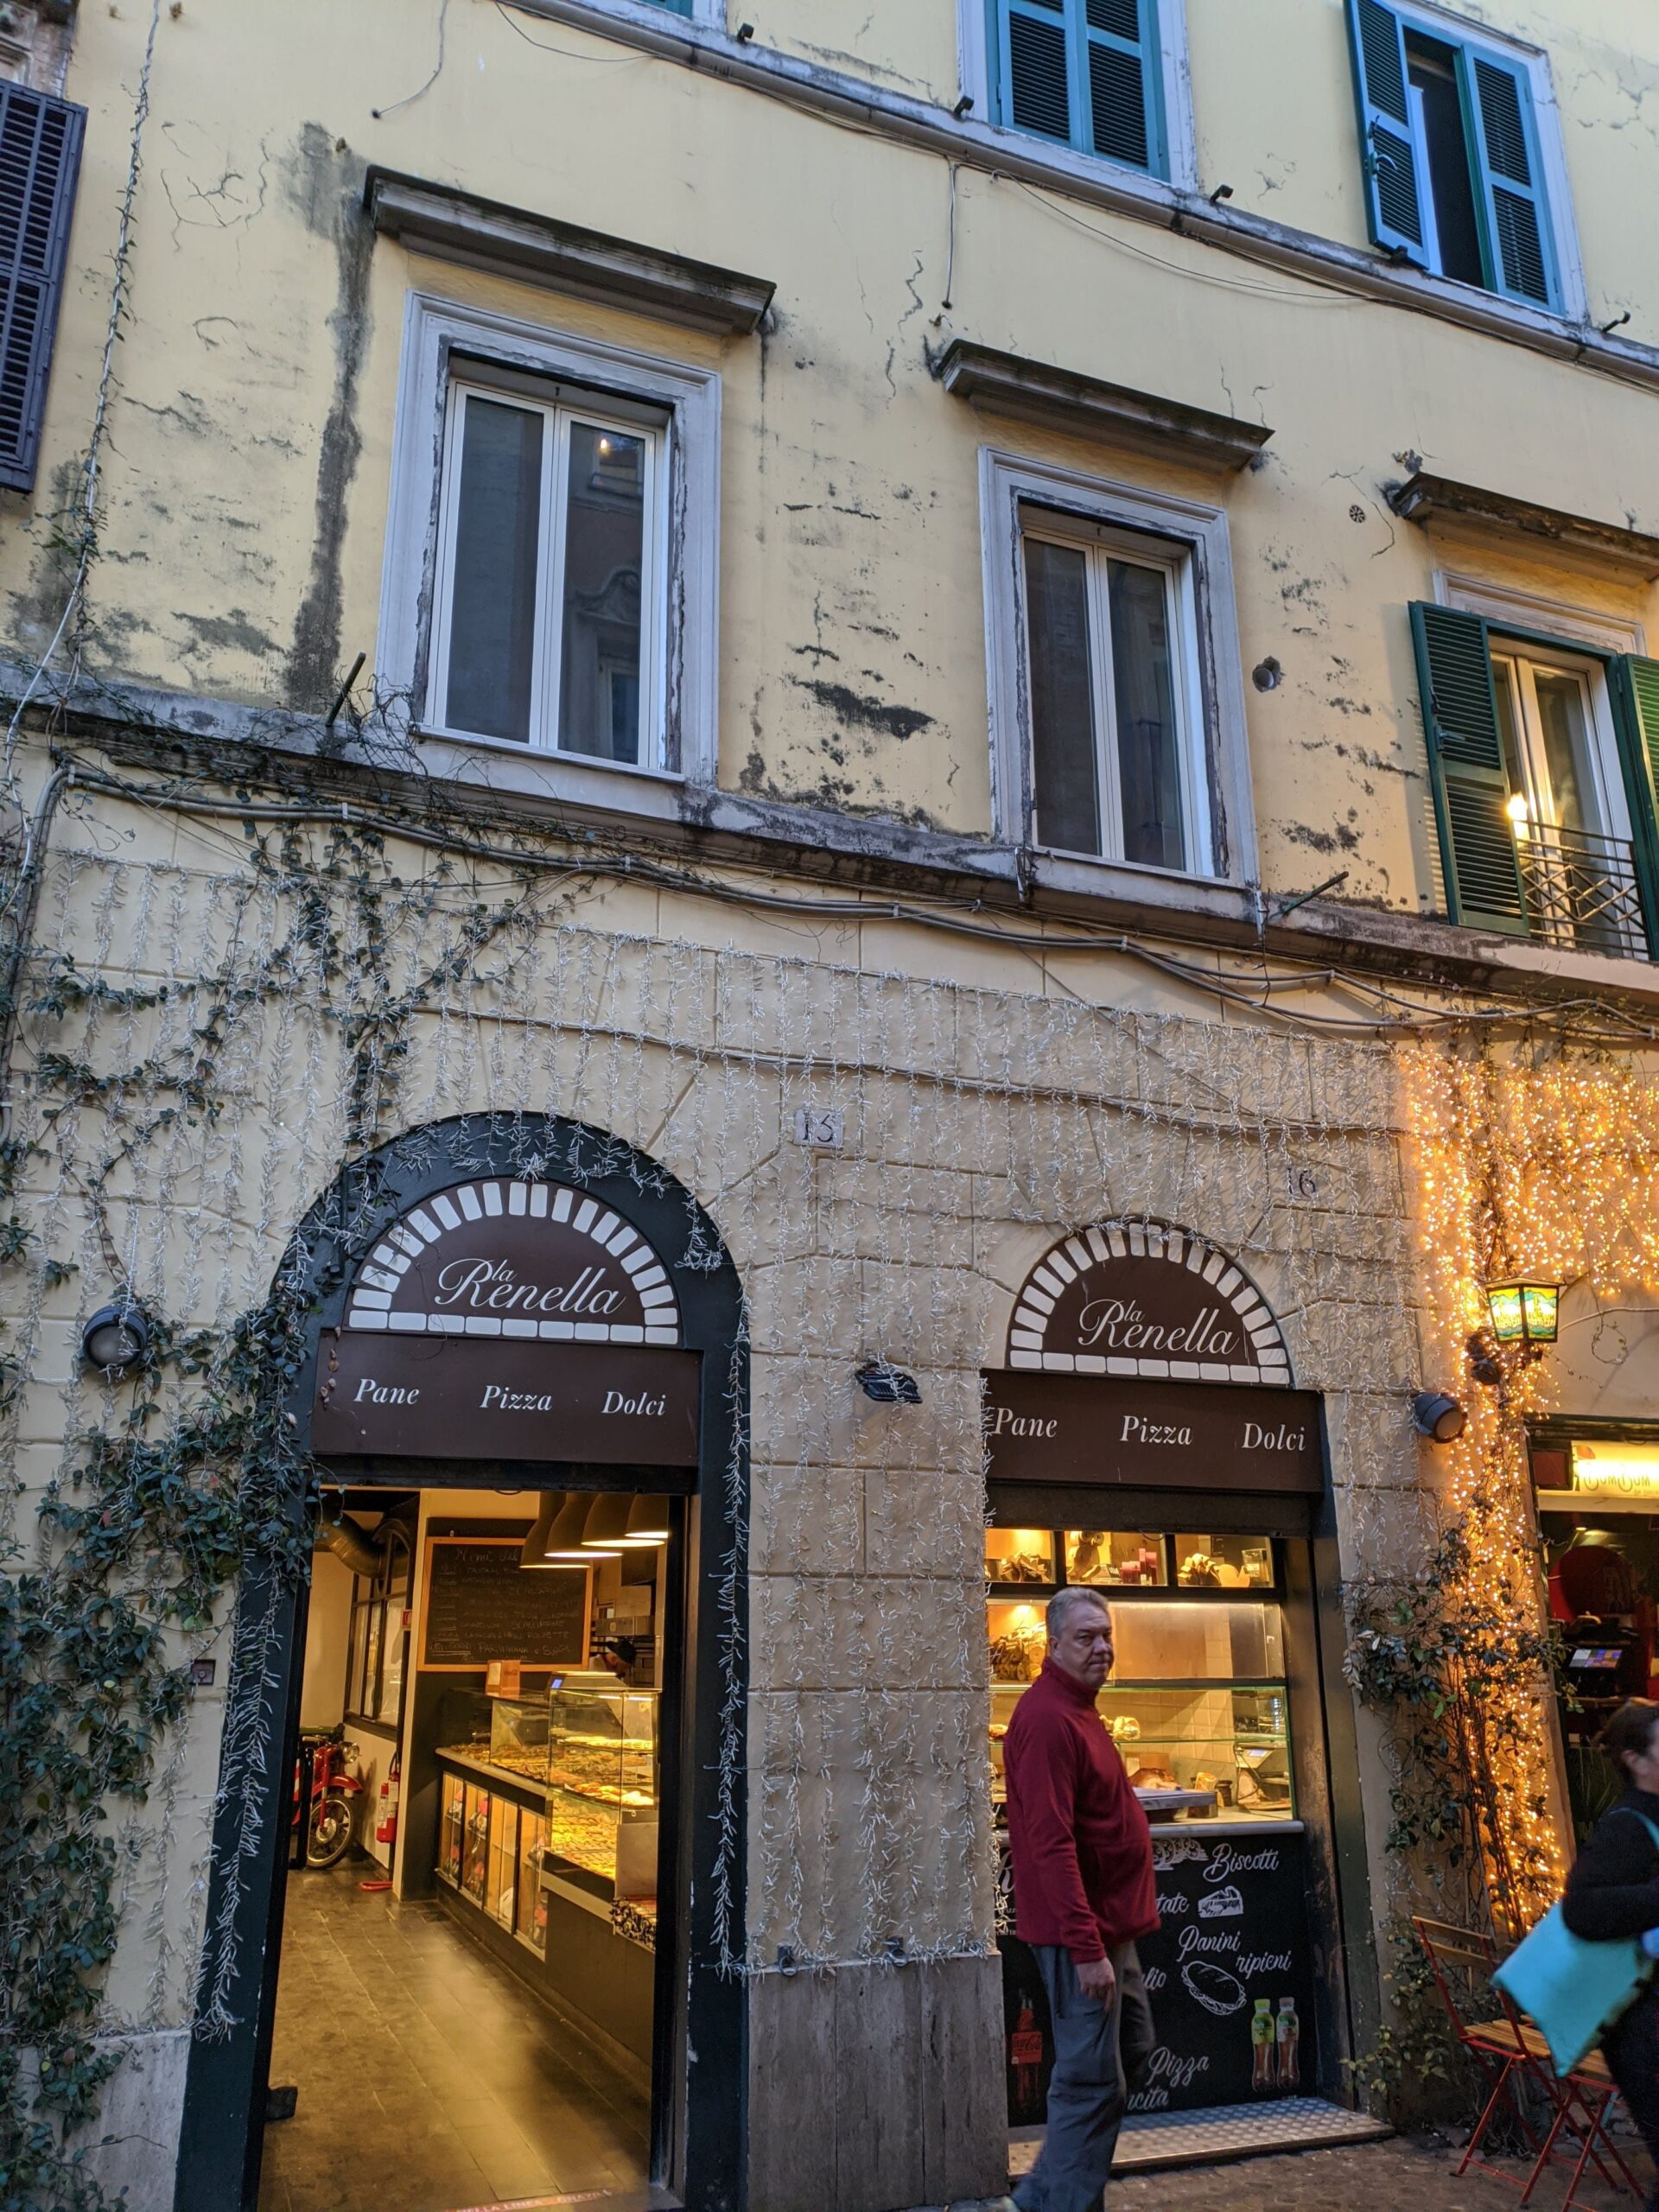 Fachada da famosa padaria Renella em Trastevere, com sua entrada arqueada e decoração luminosa, exibindo uma atmosfera acolhedora e rústica, enquanto um homem caminha por sua frente.